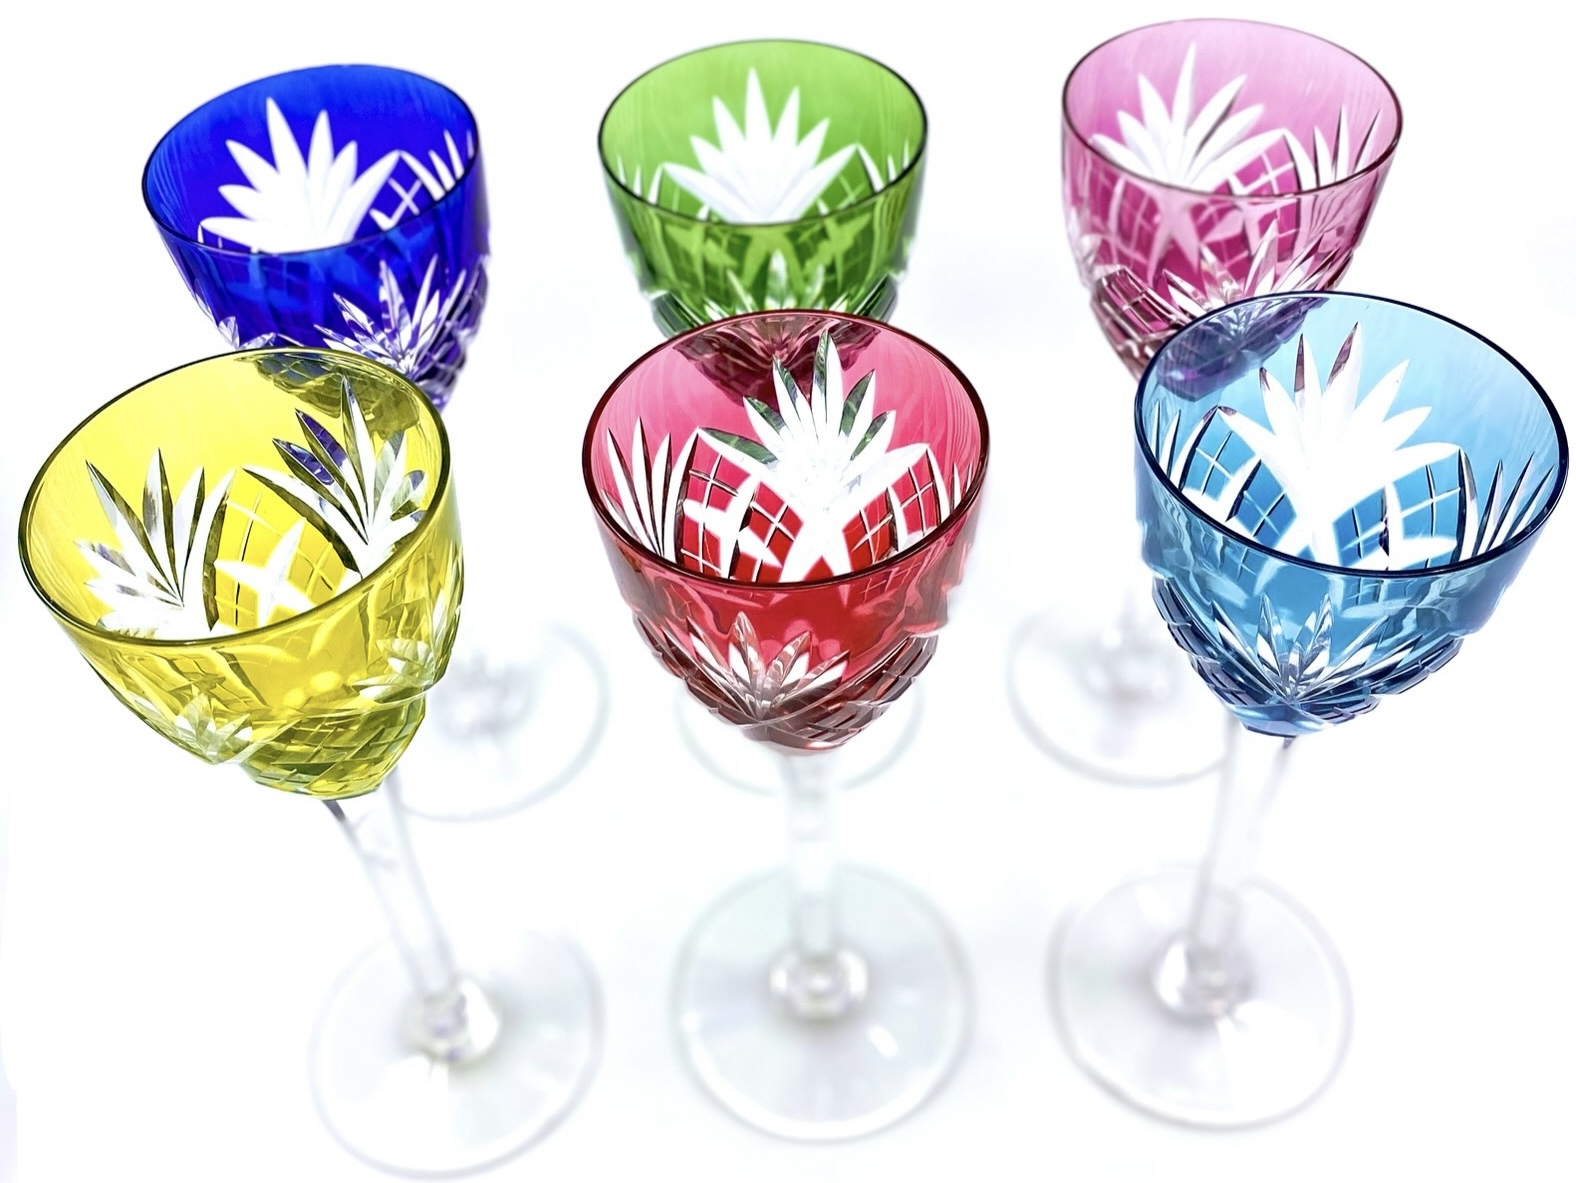 6 verres cristal couleurs saint Louis chantilly